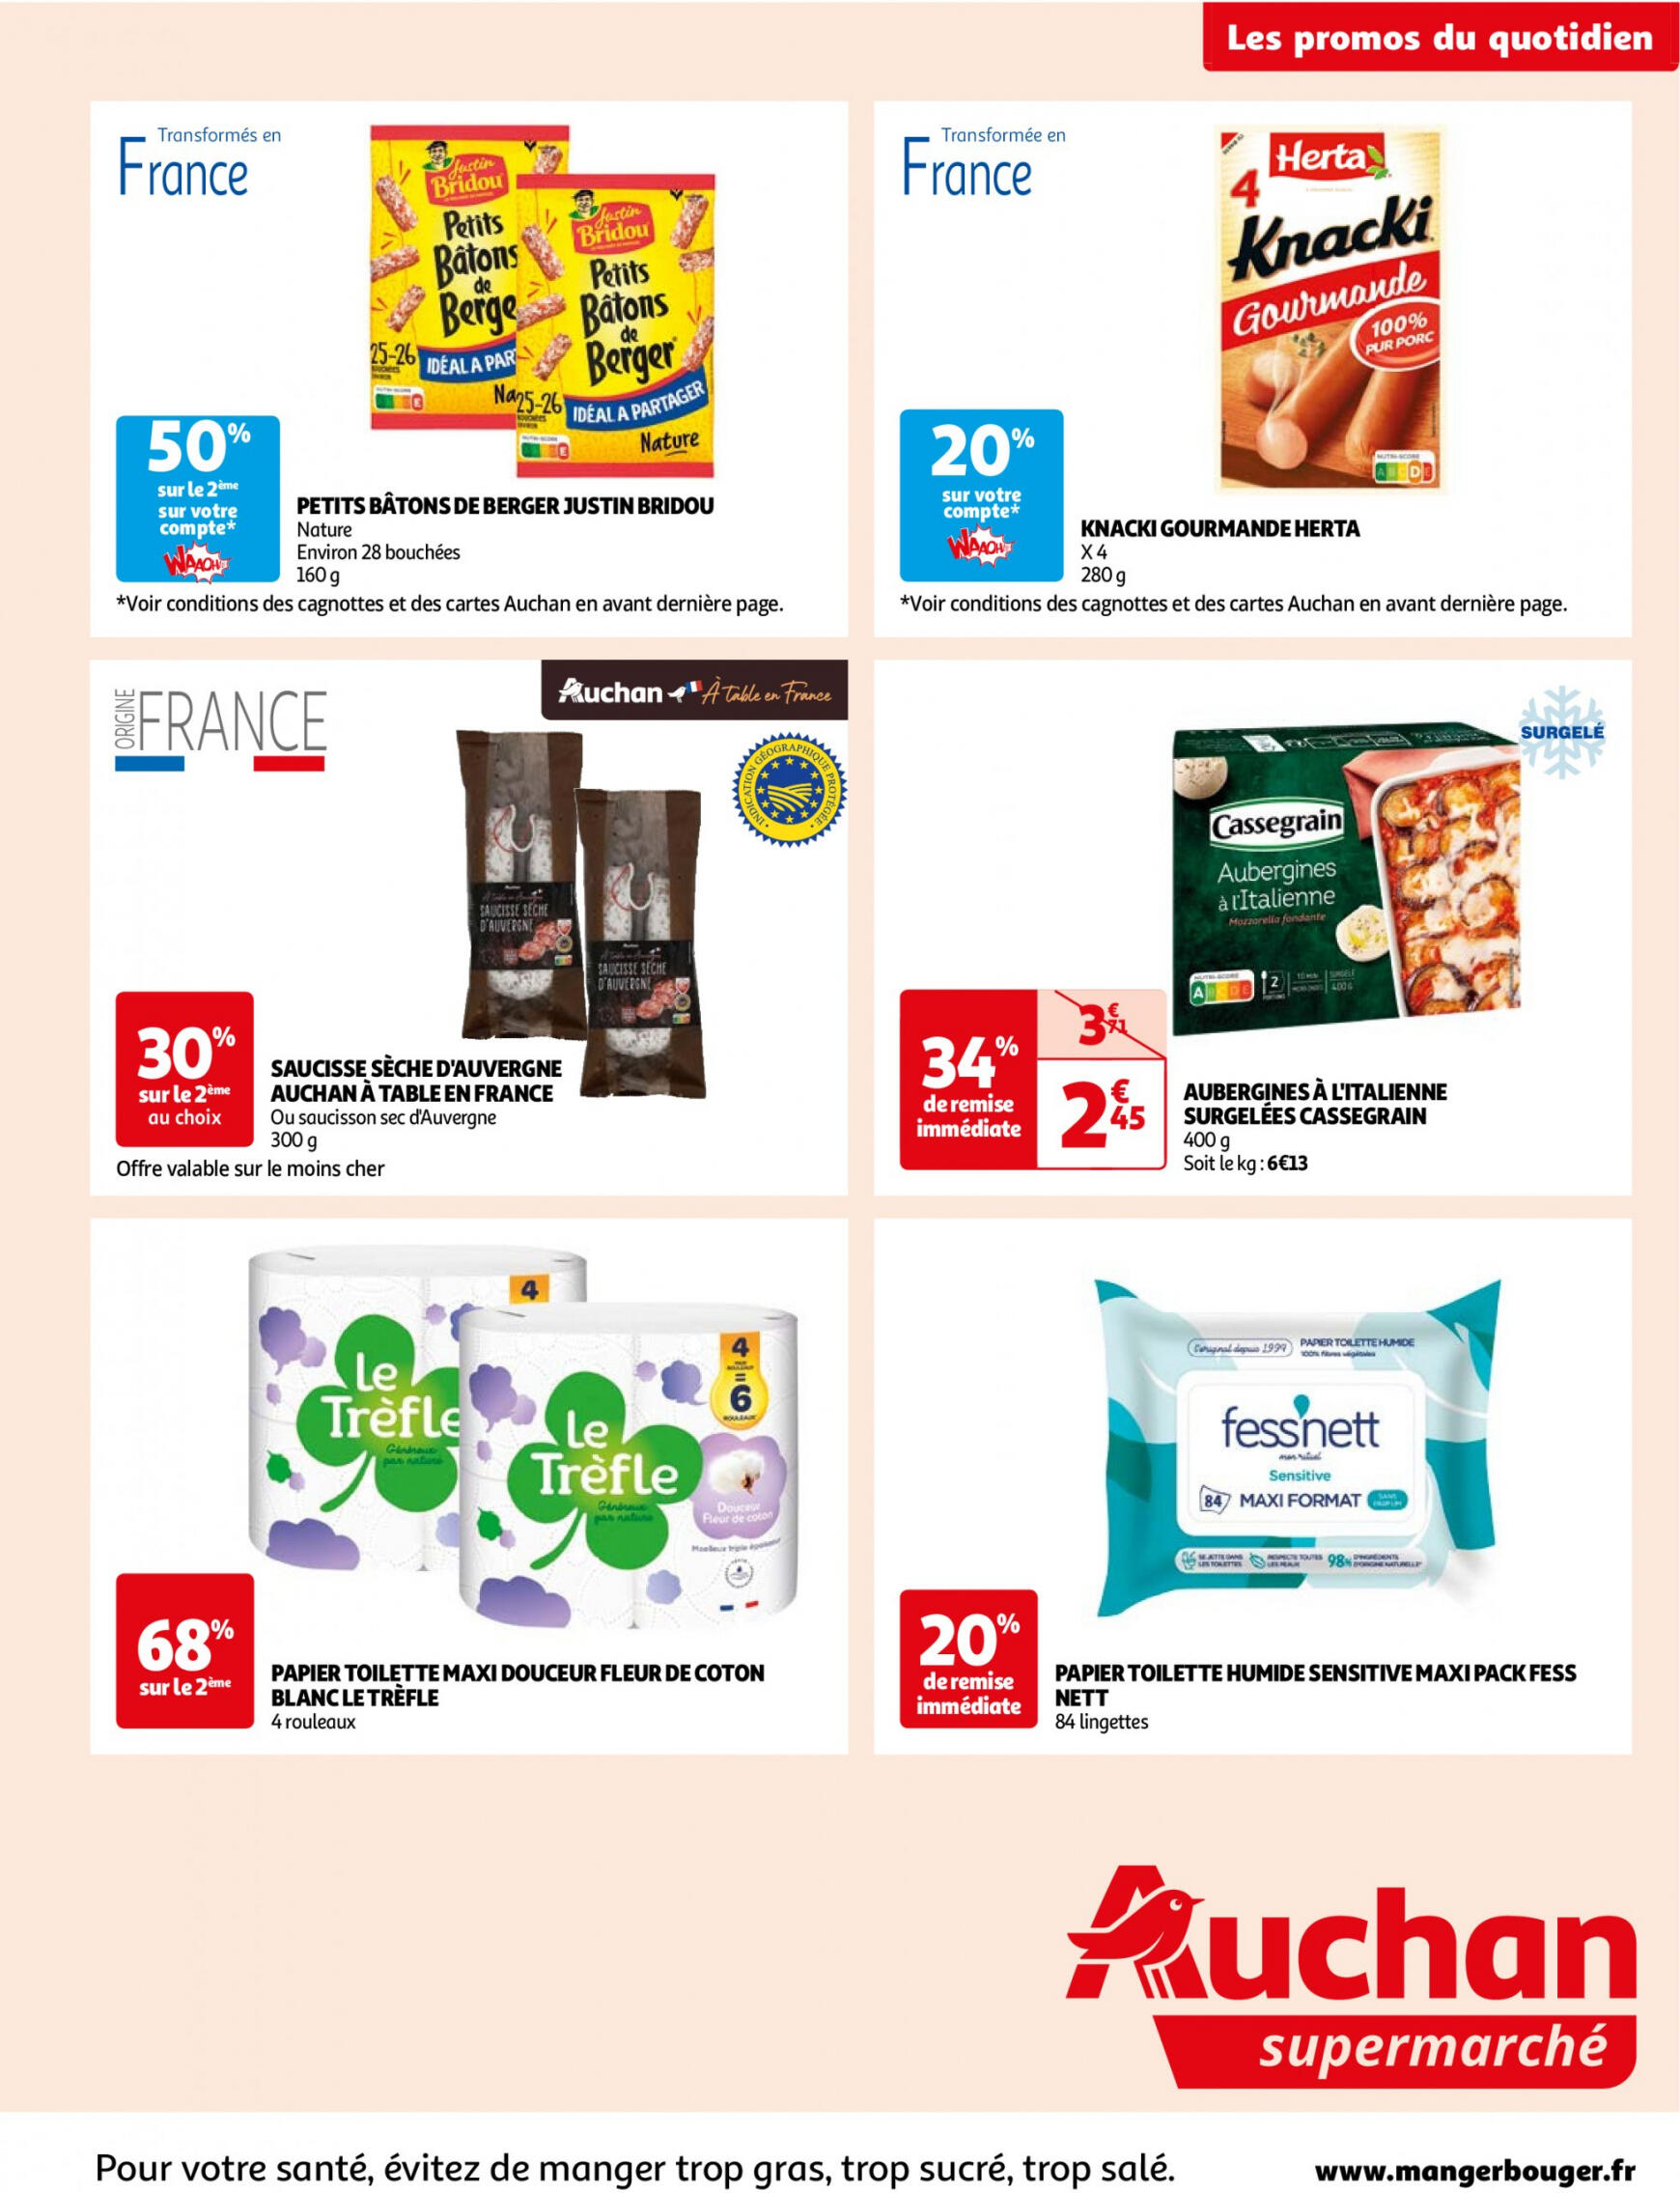 auchan - Prospectus Auchan Supermarché - Des économies au quotidien dans votre super actuel 14.05. - 02.06. - page: 9